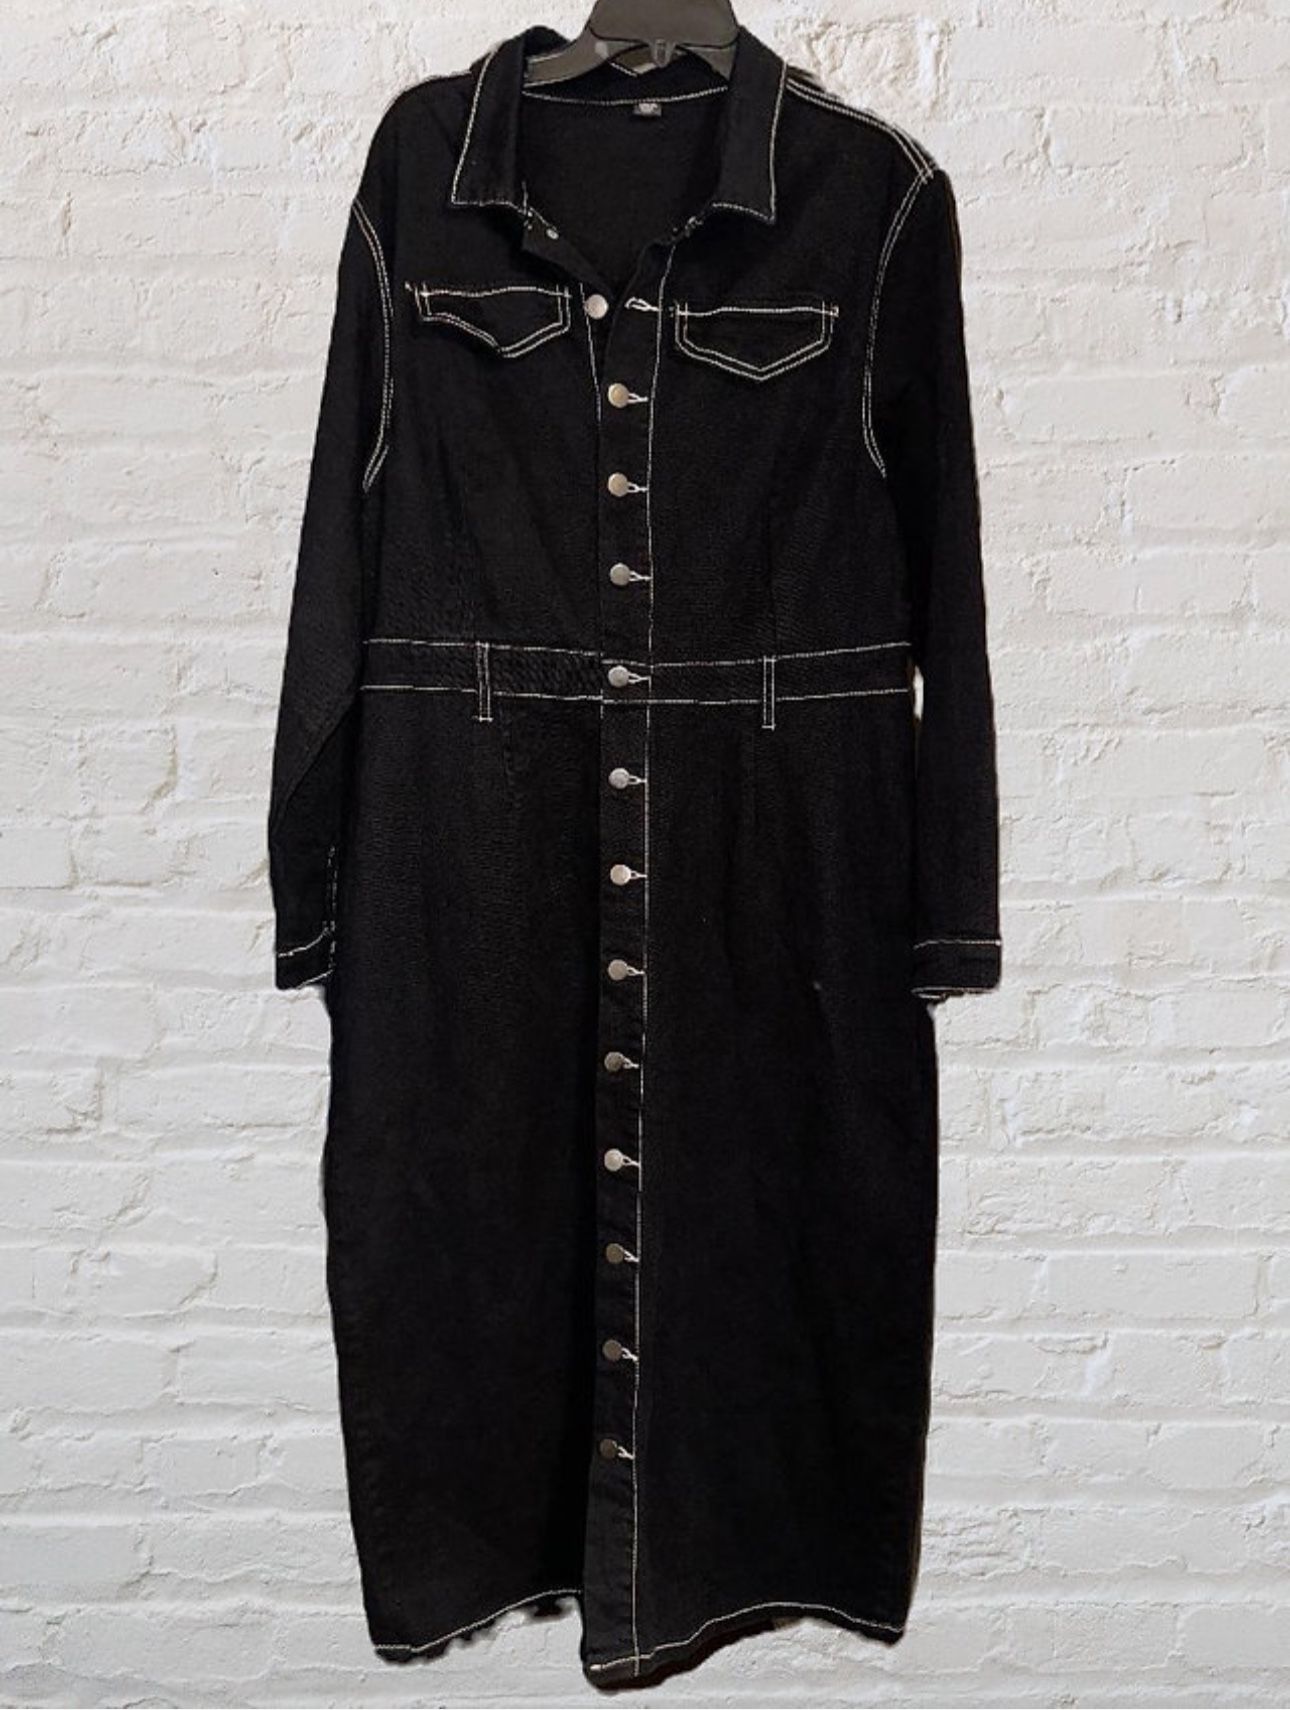 Brand New Size (2XL)Black Jean Dress with White Trim